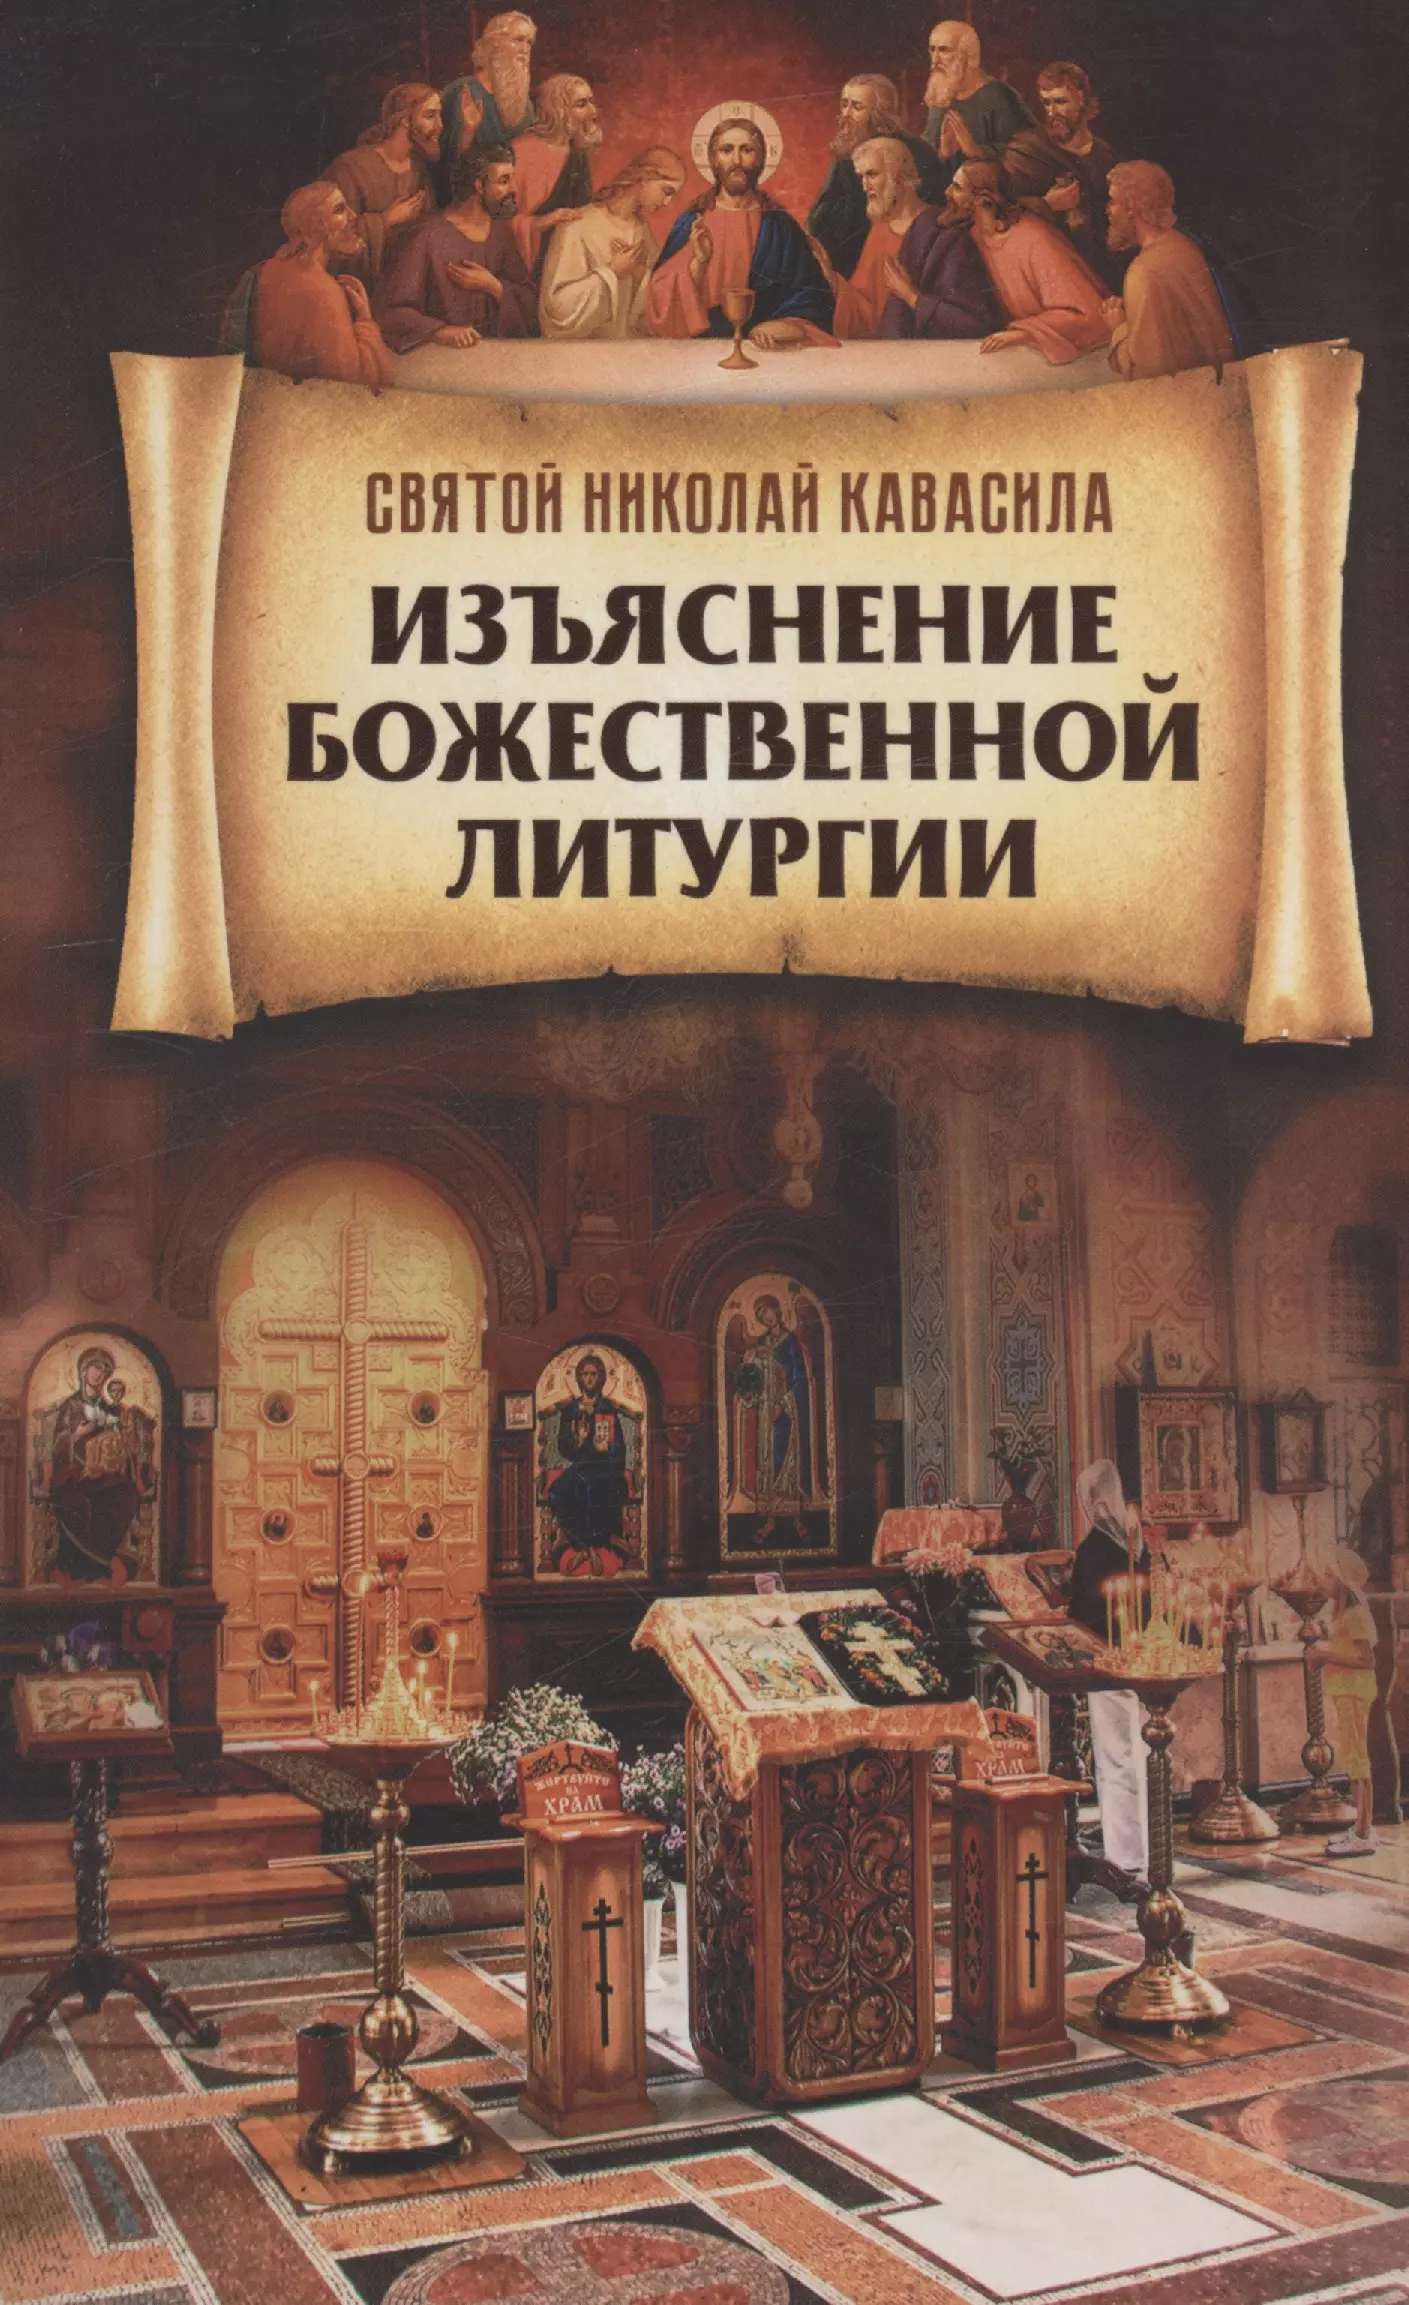 Святитель Кавасила Николай Изъяснение Божественной Литургии о божественной литургии